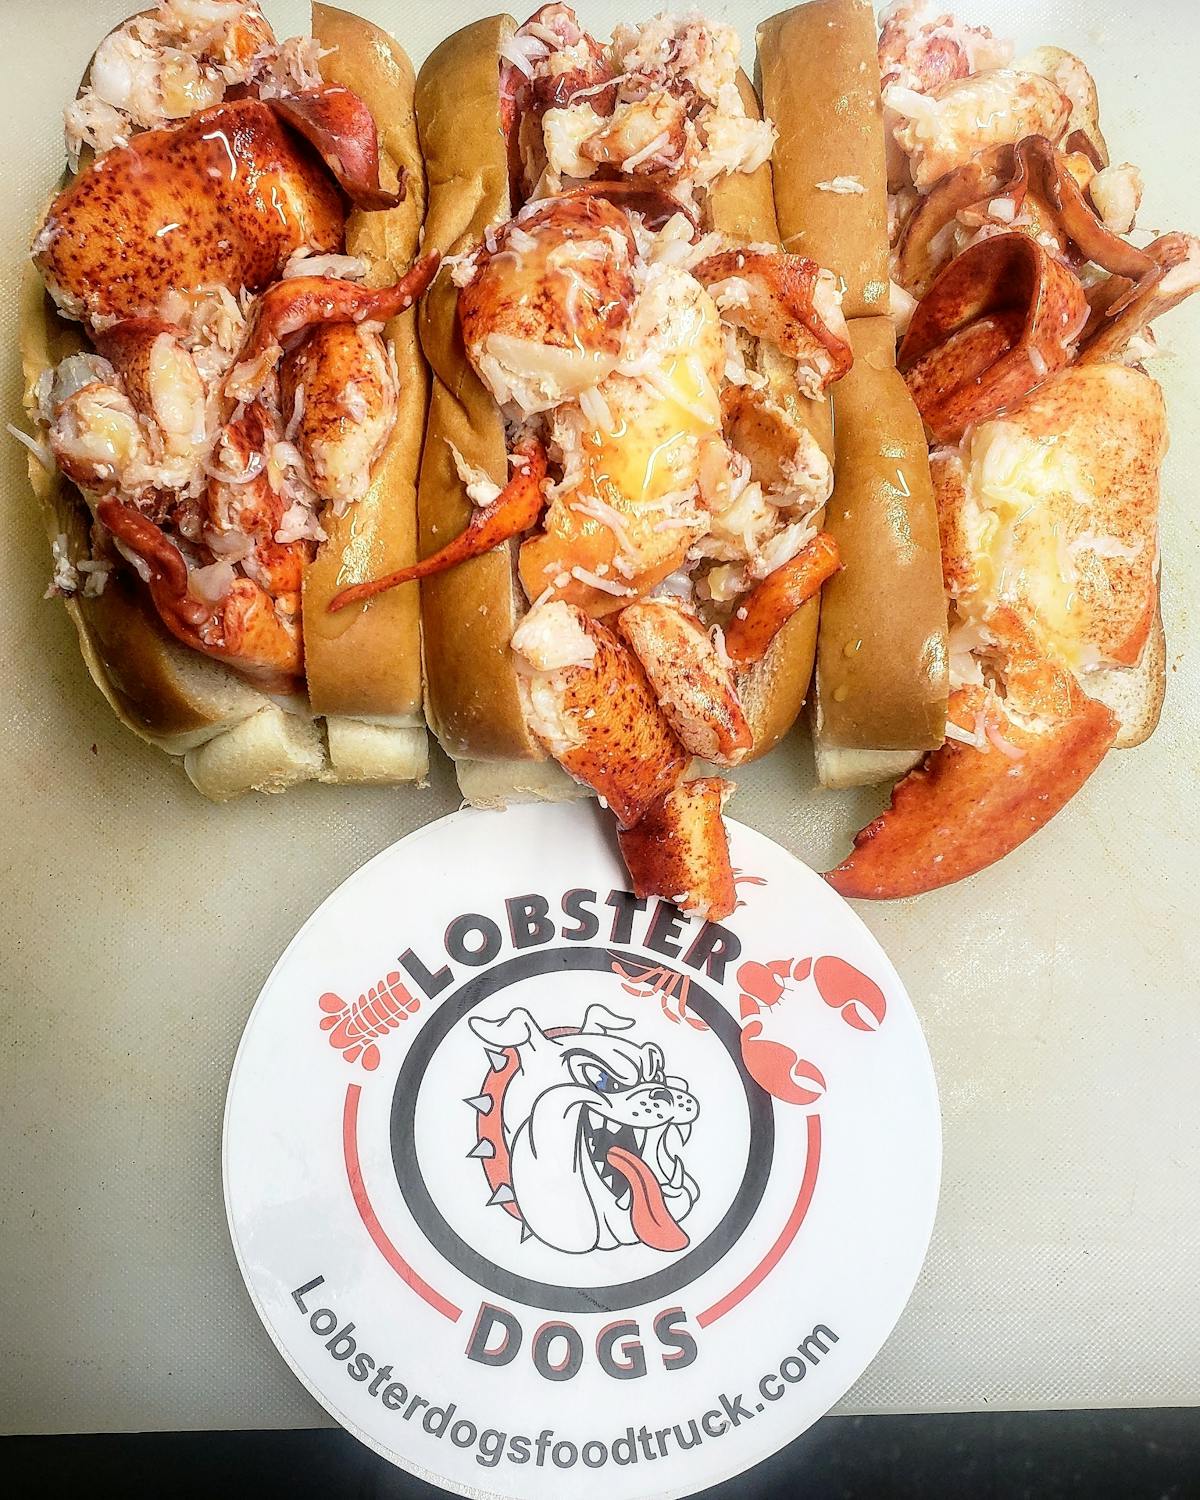 a lobster sandwich